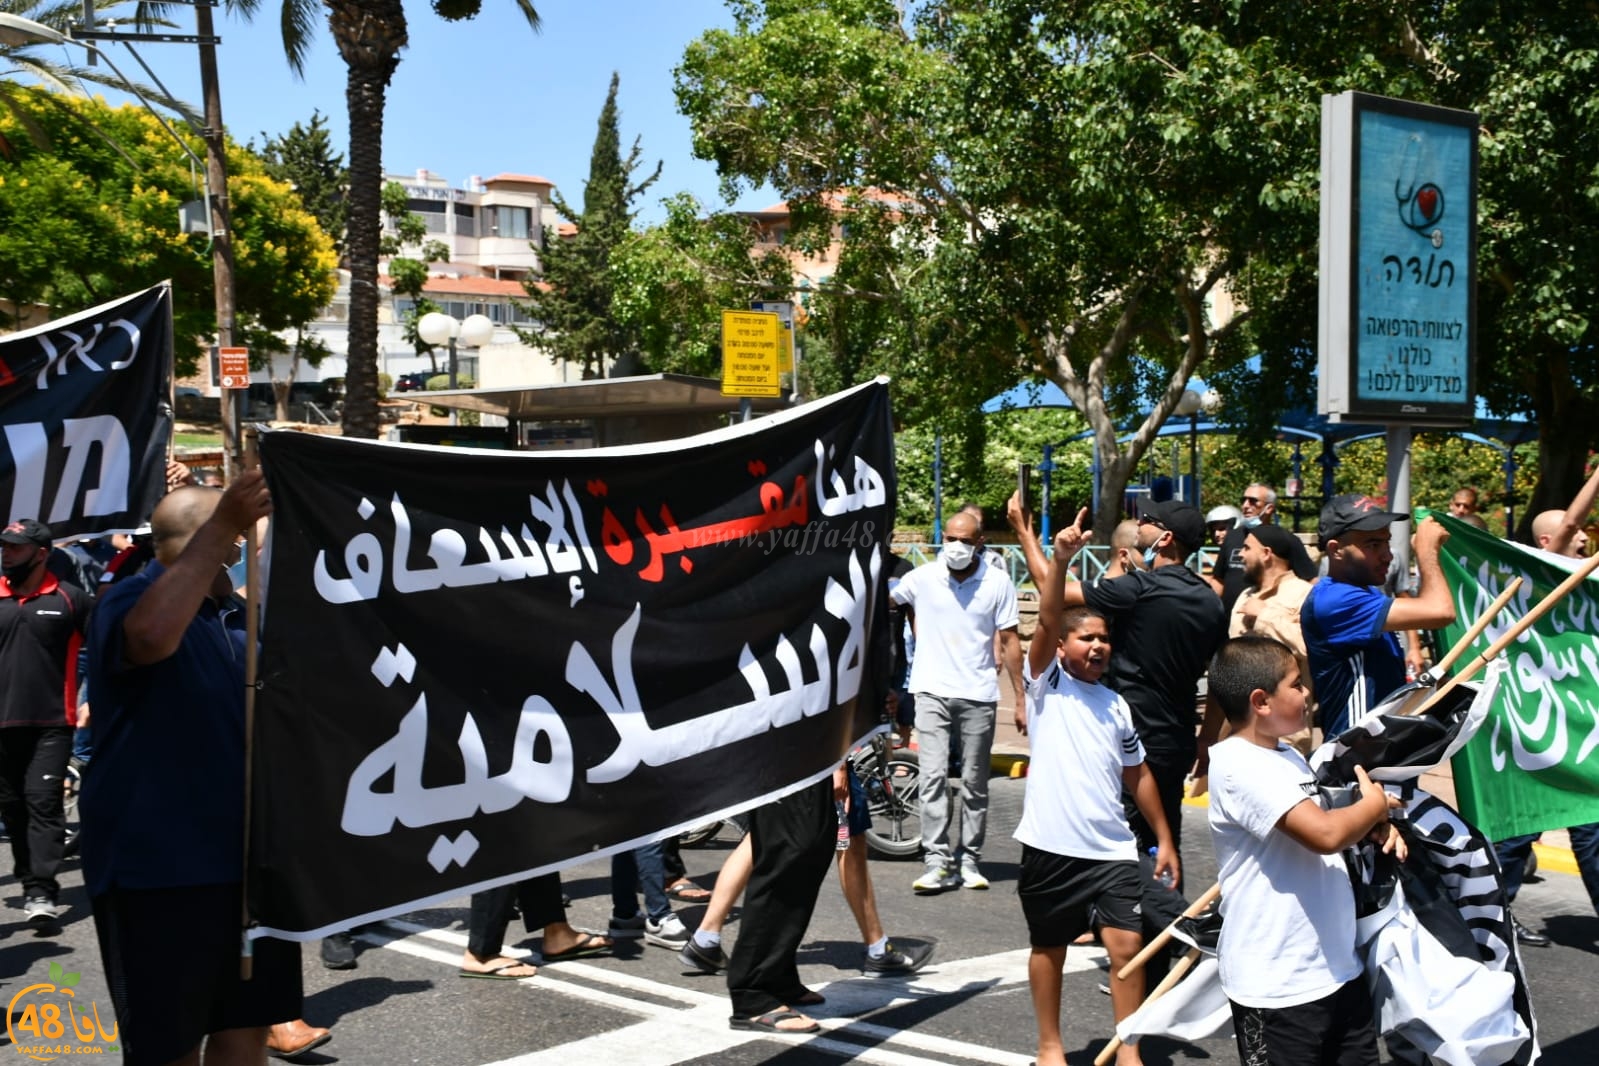 فيديو: مسيرات غاضبة بيافا احتجاجاً على نبش مقبرة الاسعاف 